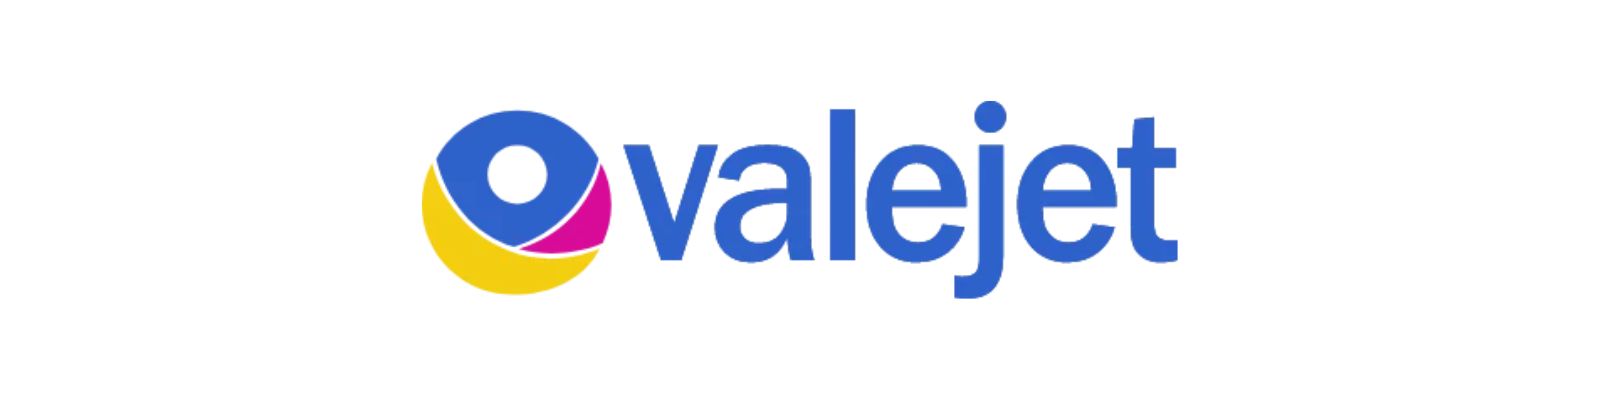 Valejet é confiável: Saiba como comprar com segurança!